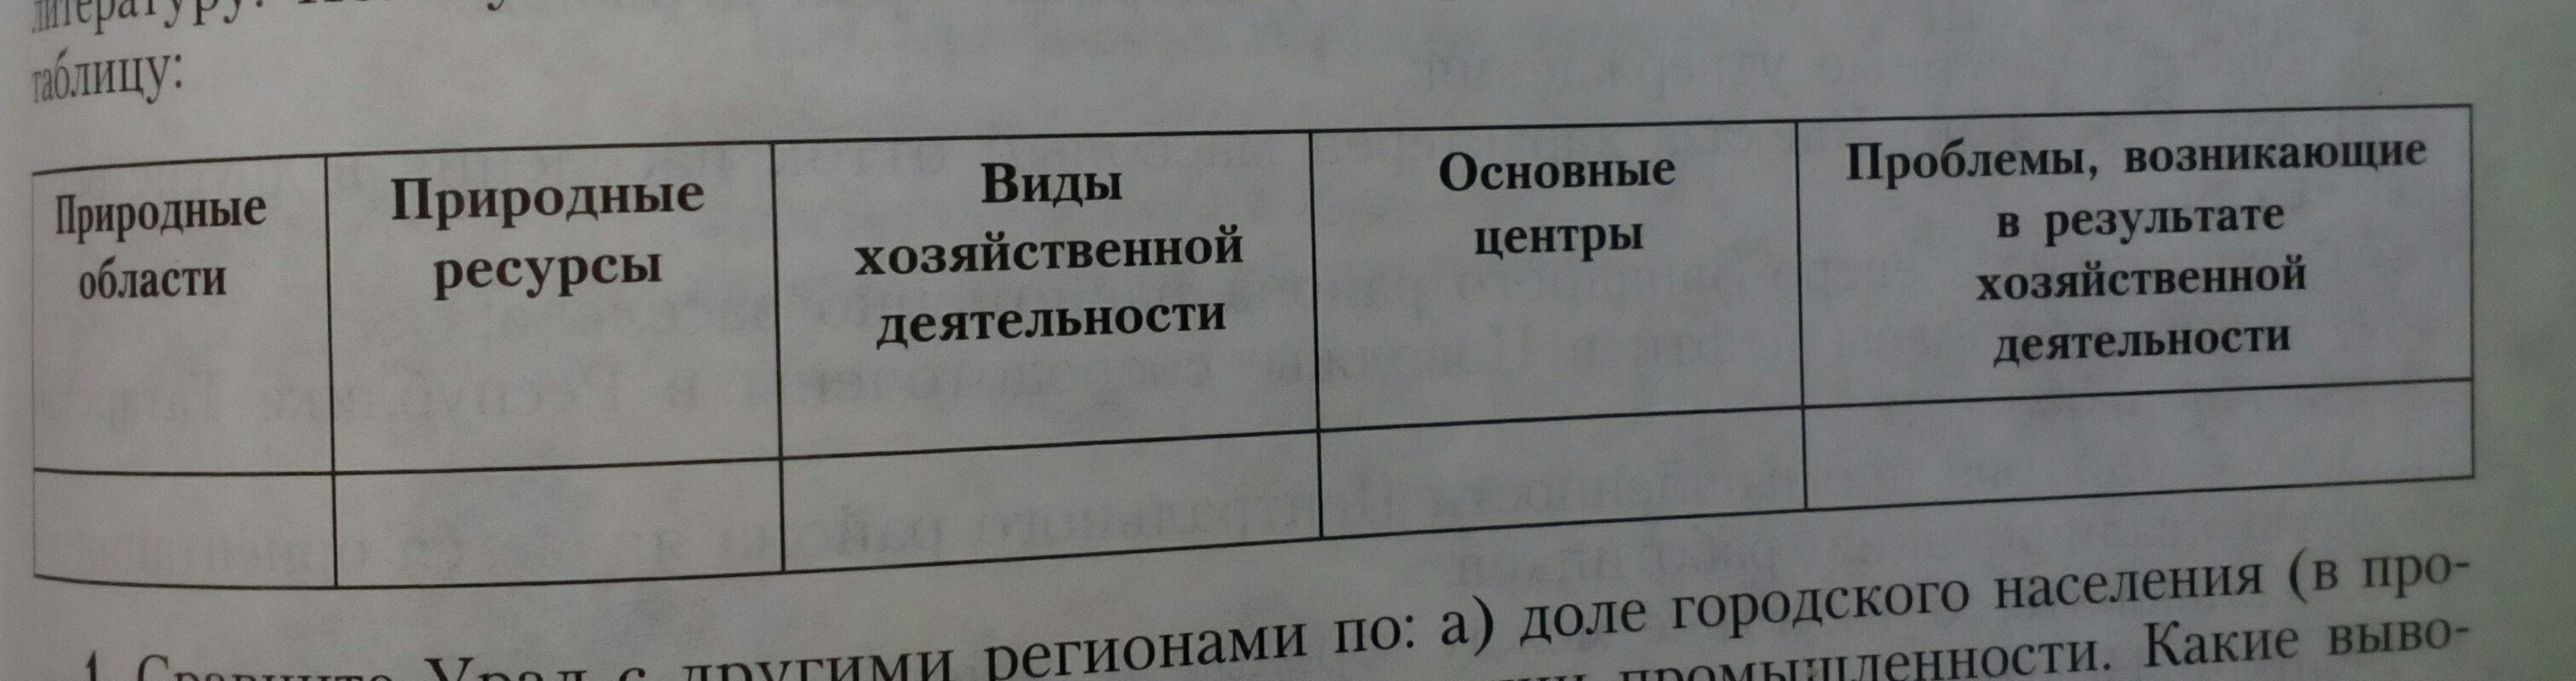 Таблица природных ресурсов Урала